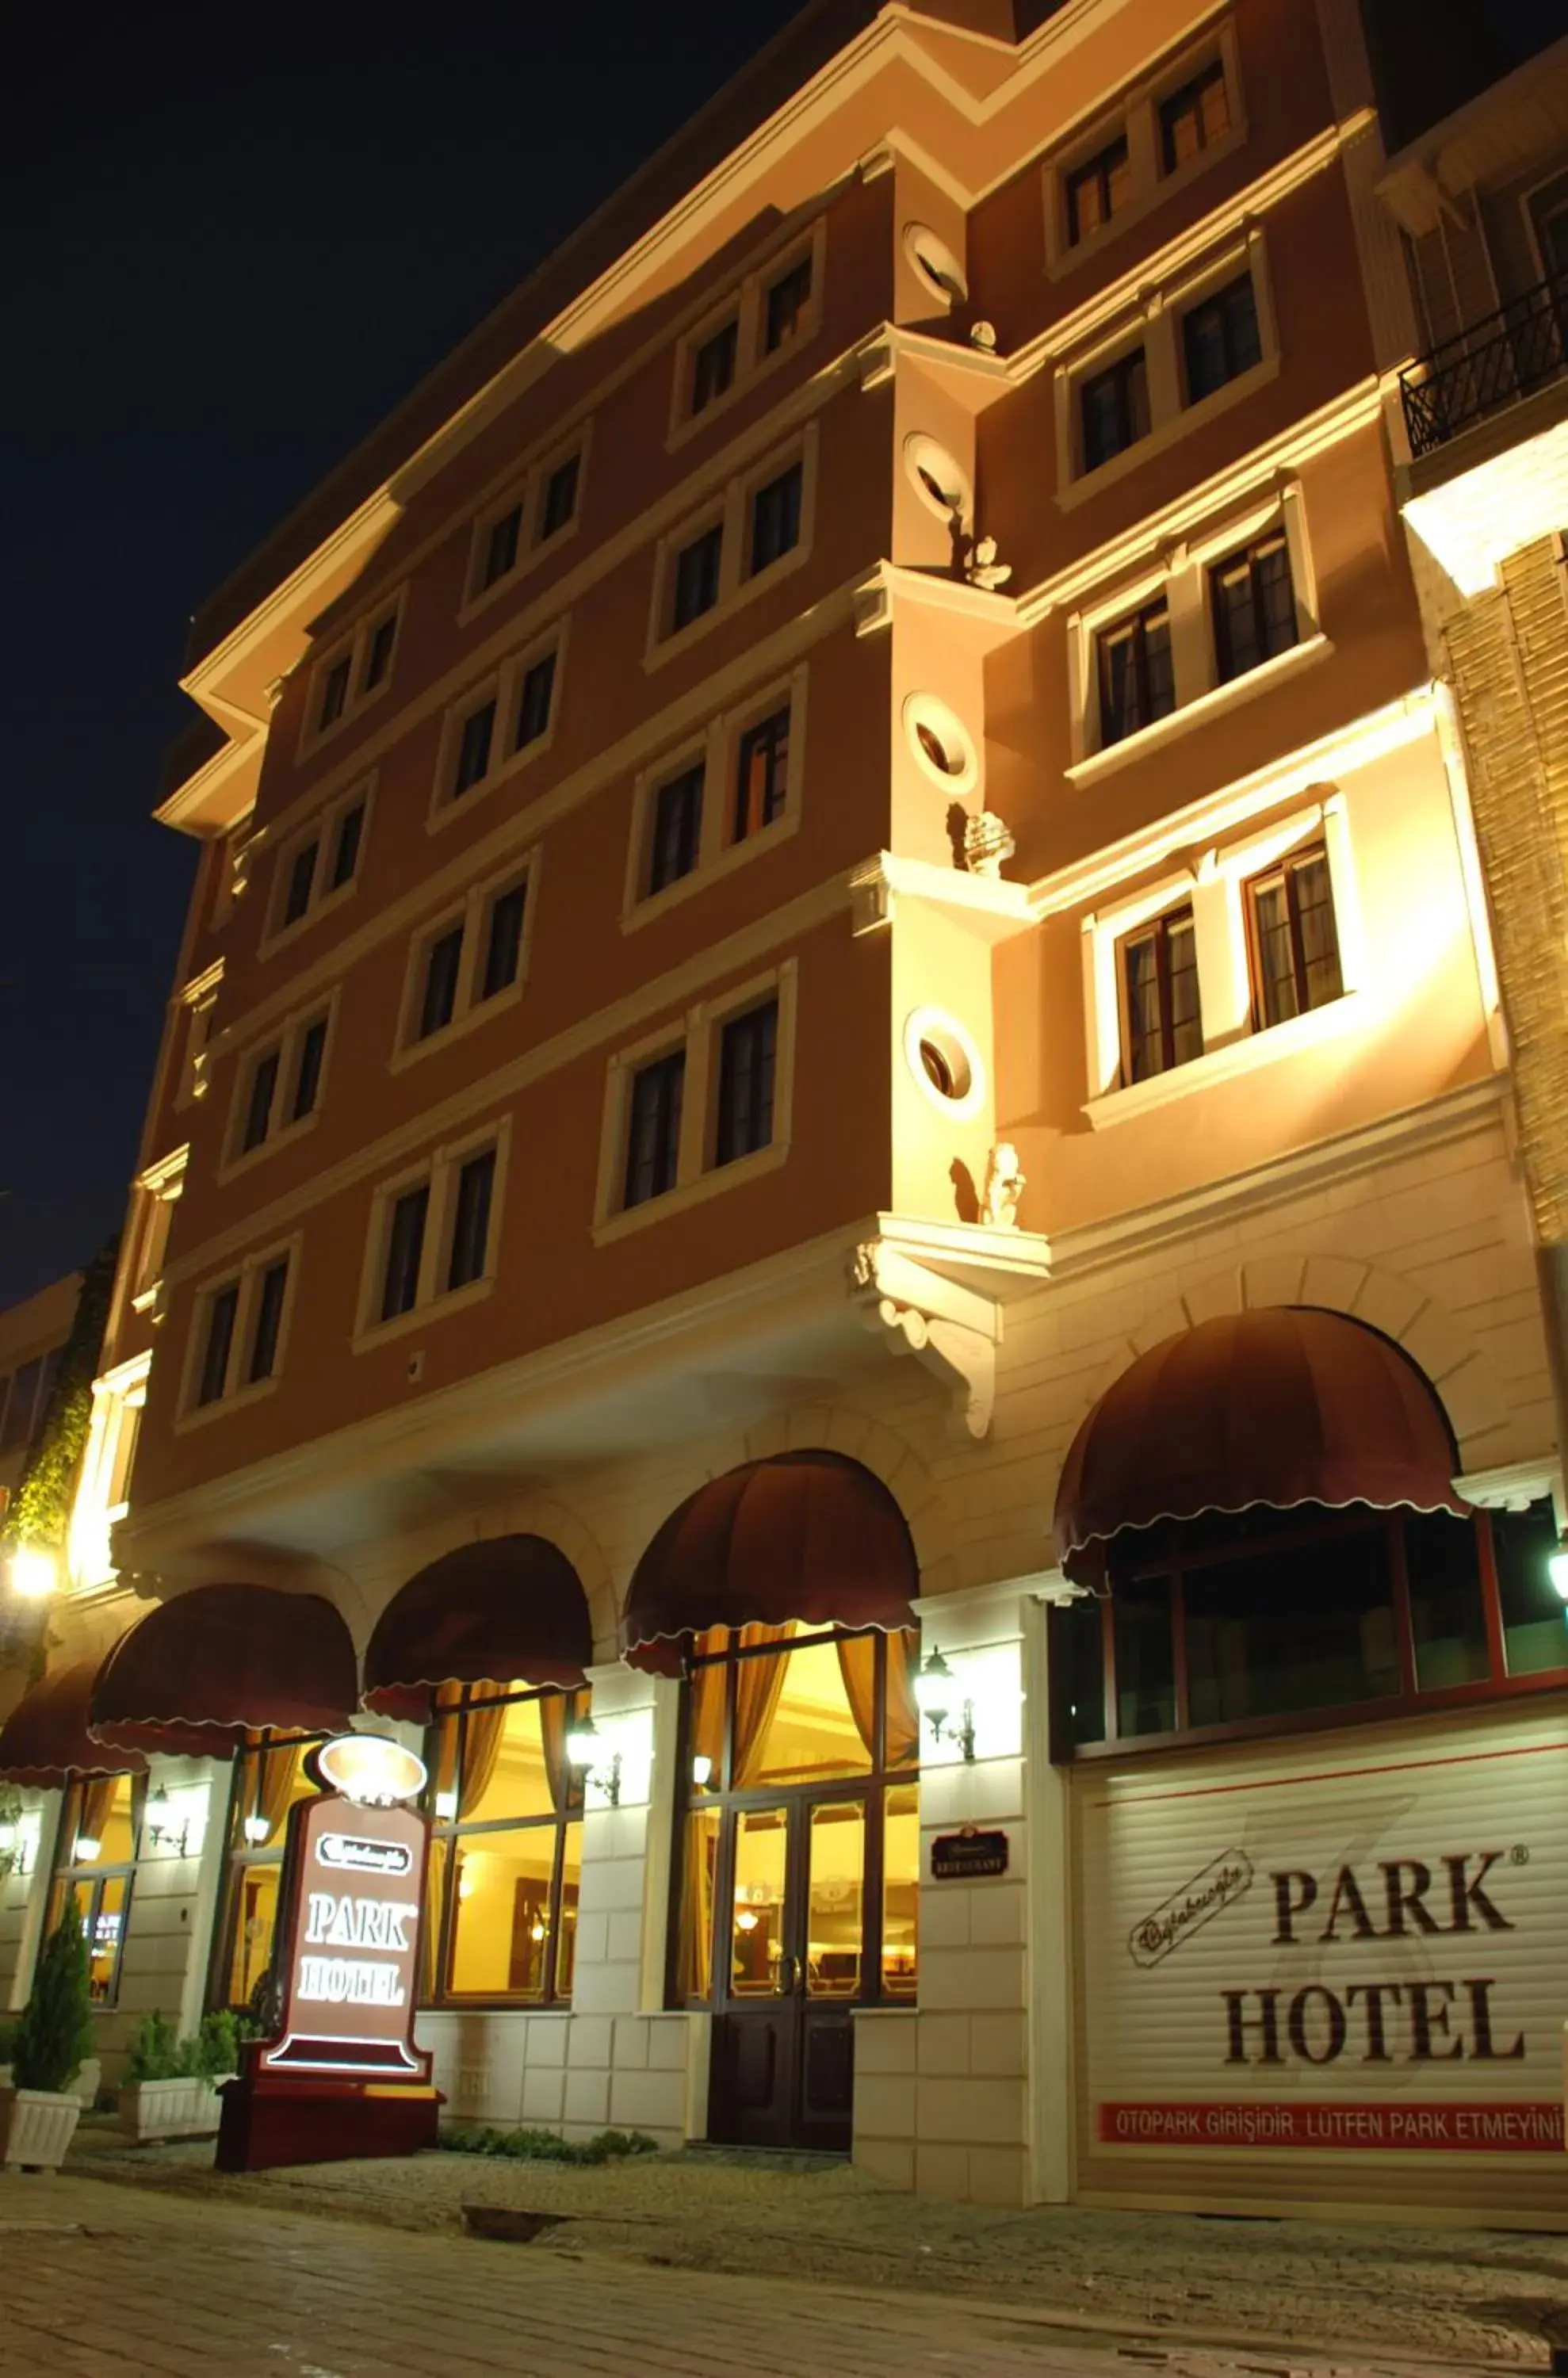 Facade/entrance, Property Building in Oglakcioglu Park Boutique Hotel